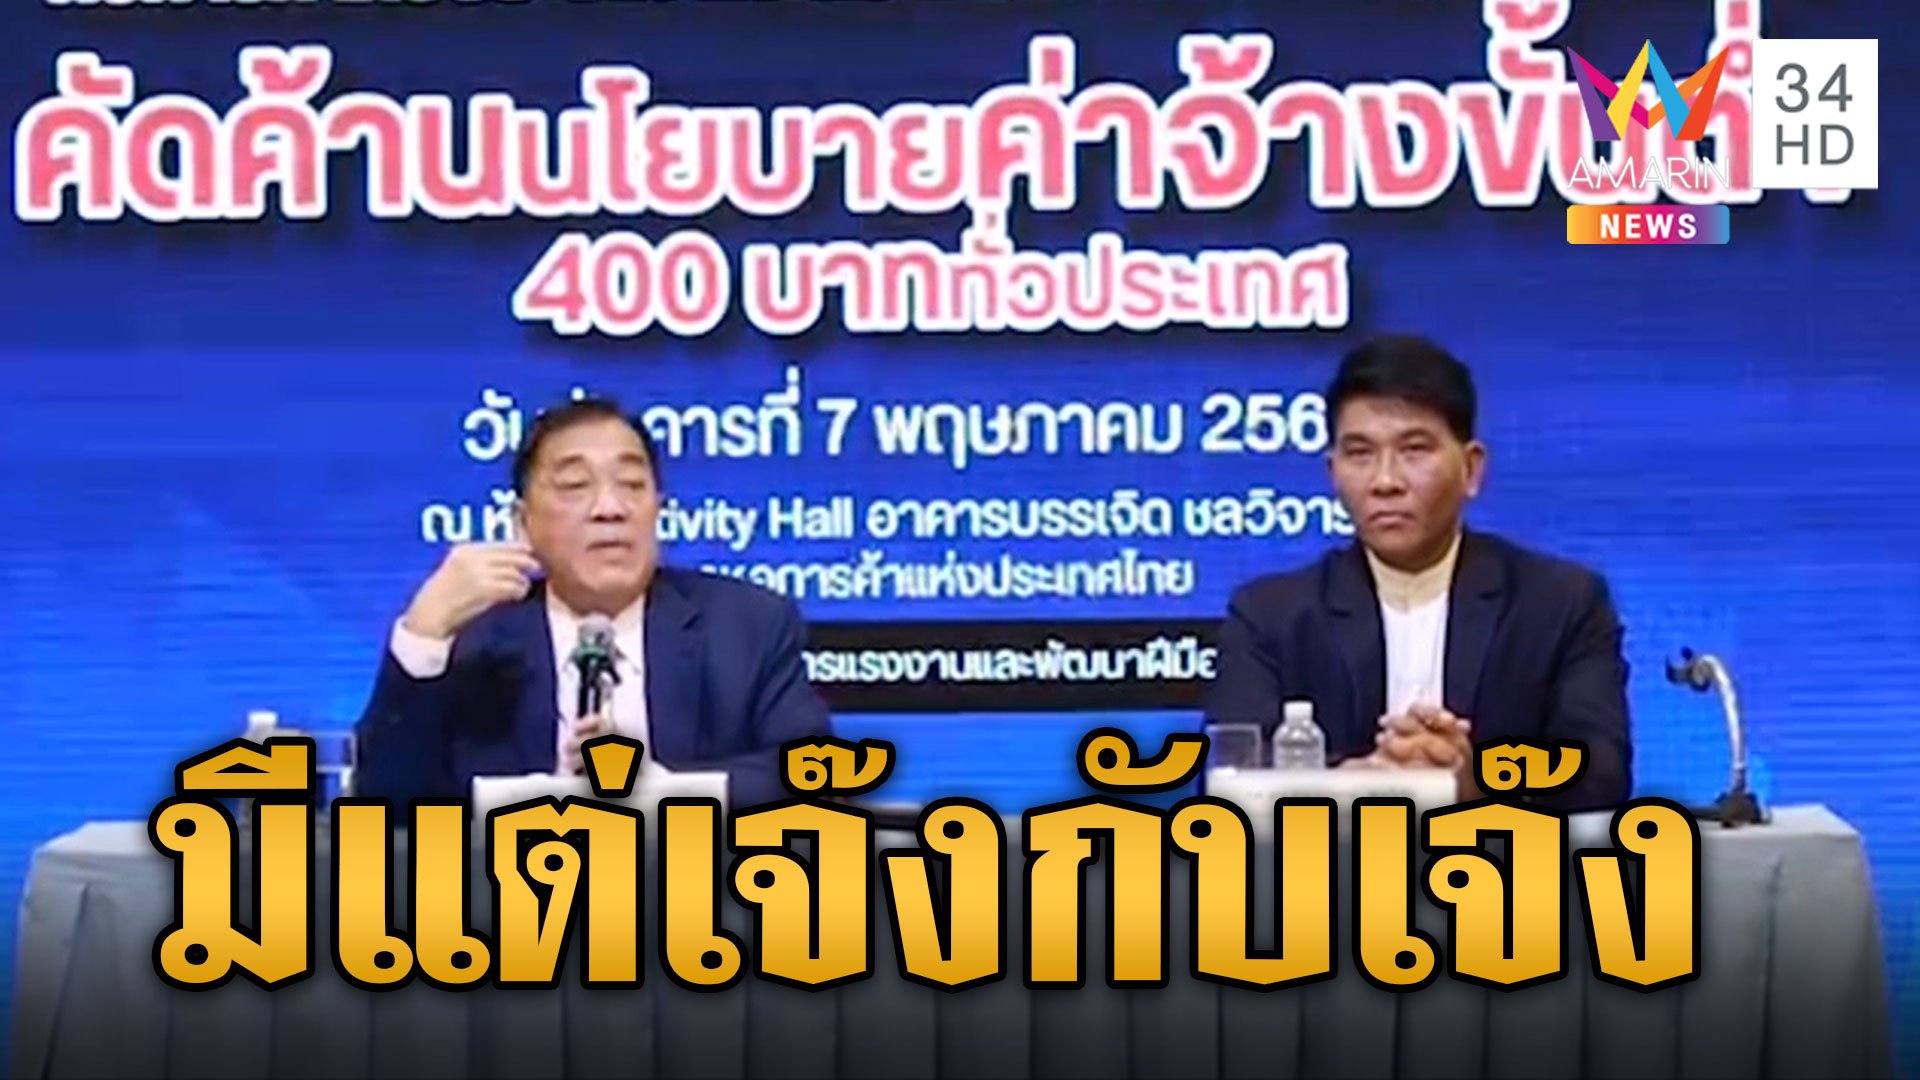 หอการค้าไทยค้านสุดซอย ขึ้นค่าแรง 400 ร่ายผลกระทบกระชากค่าแรงจากนโยบายหาเสียง | ข่าวเย็นอมรินทร์ | 8 พ.ค. 67 | AMARIN TVHD34